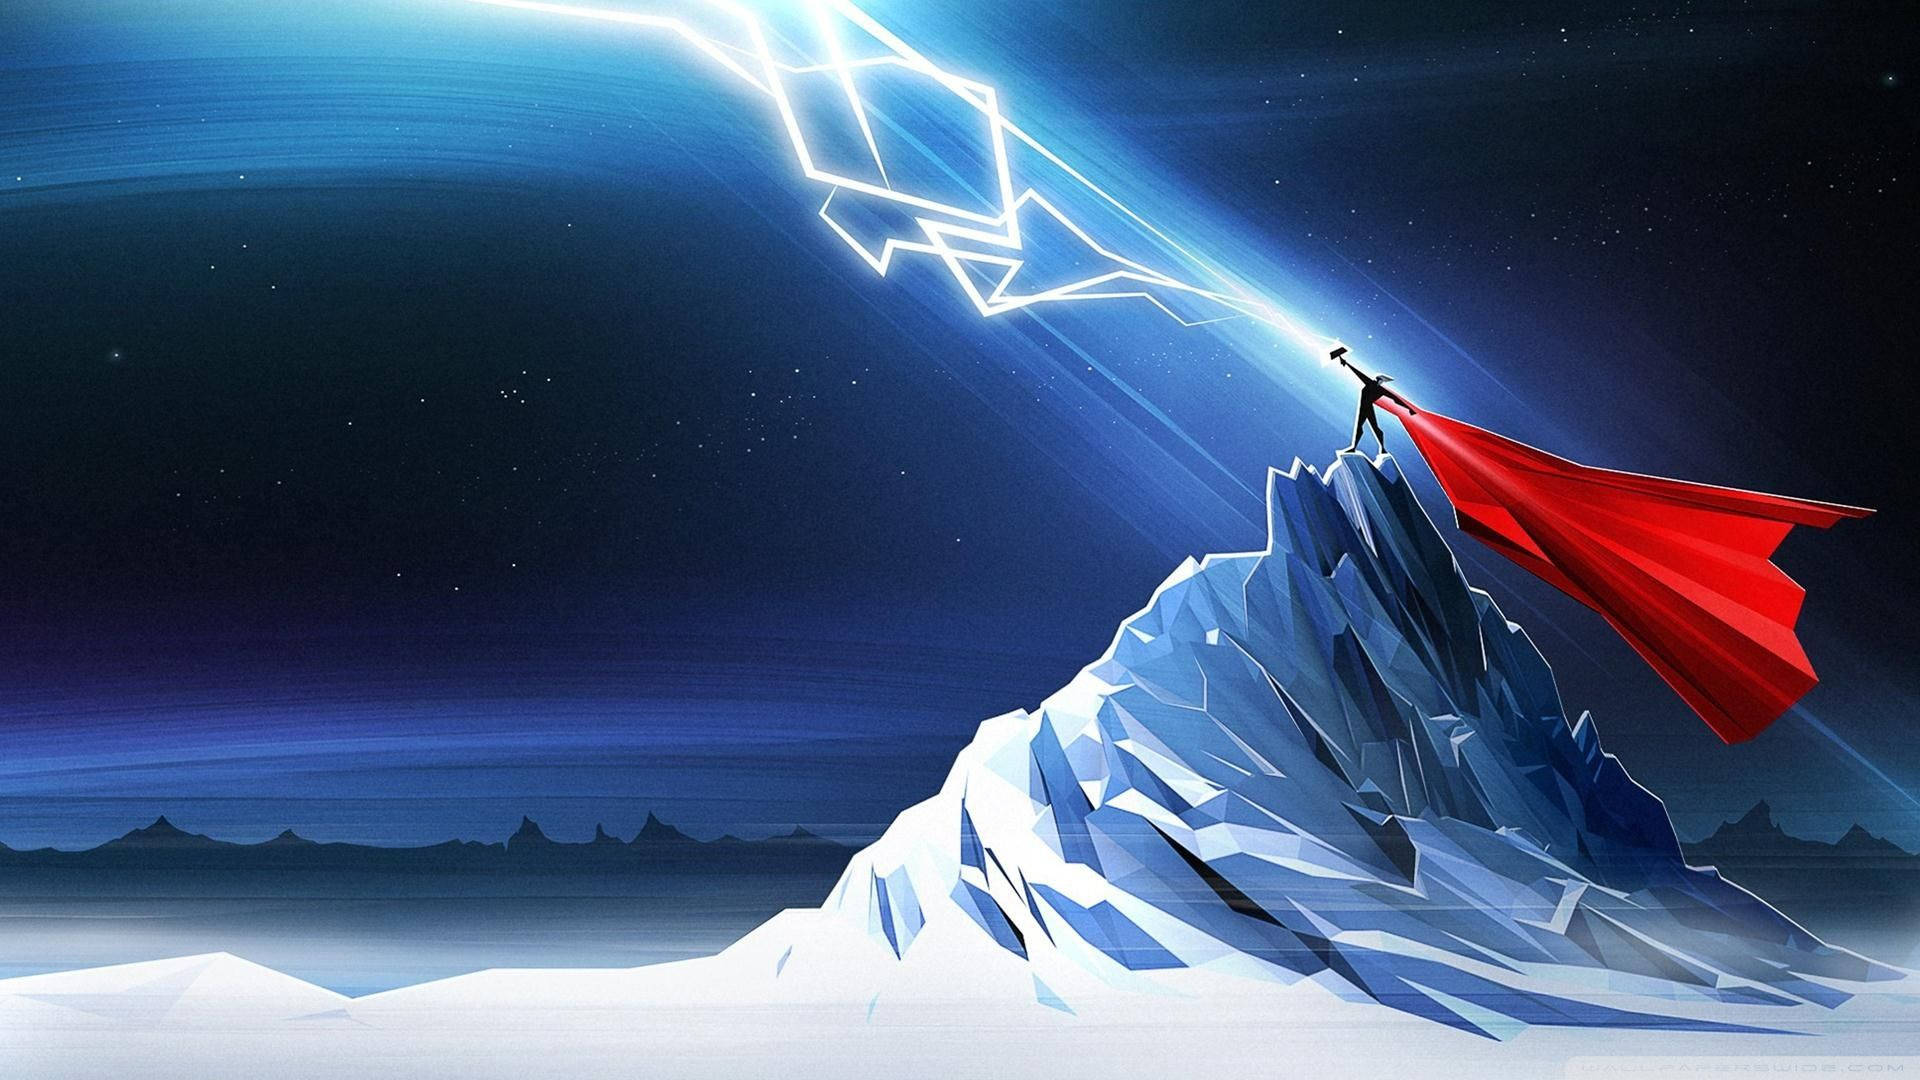 Amazing Thor Lightning Art Background